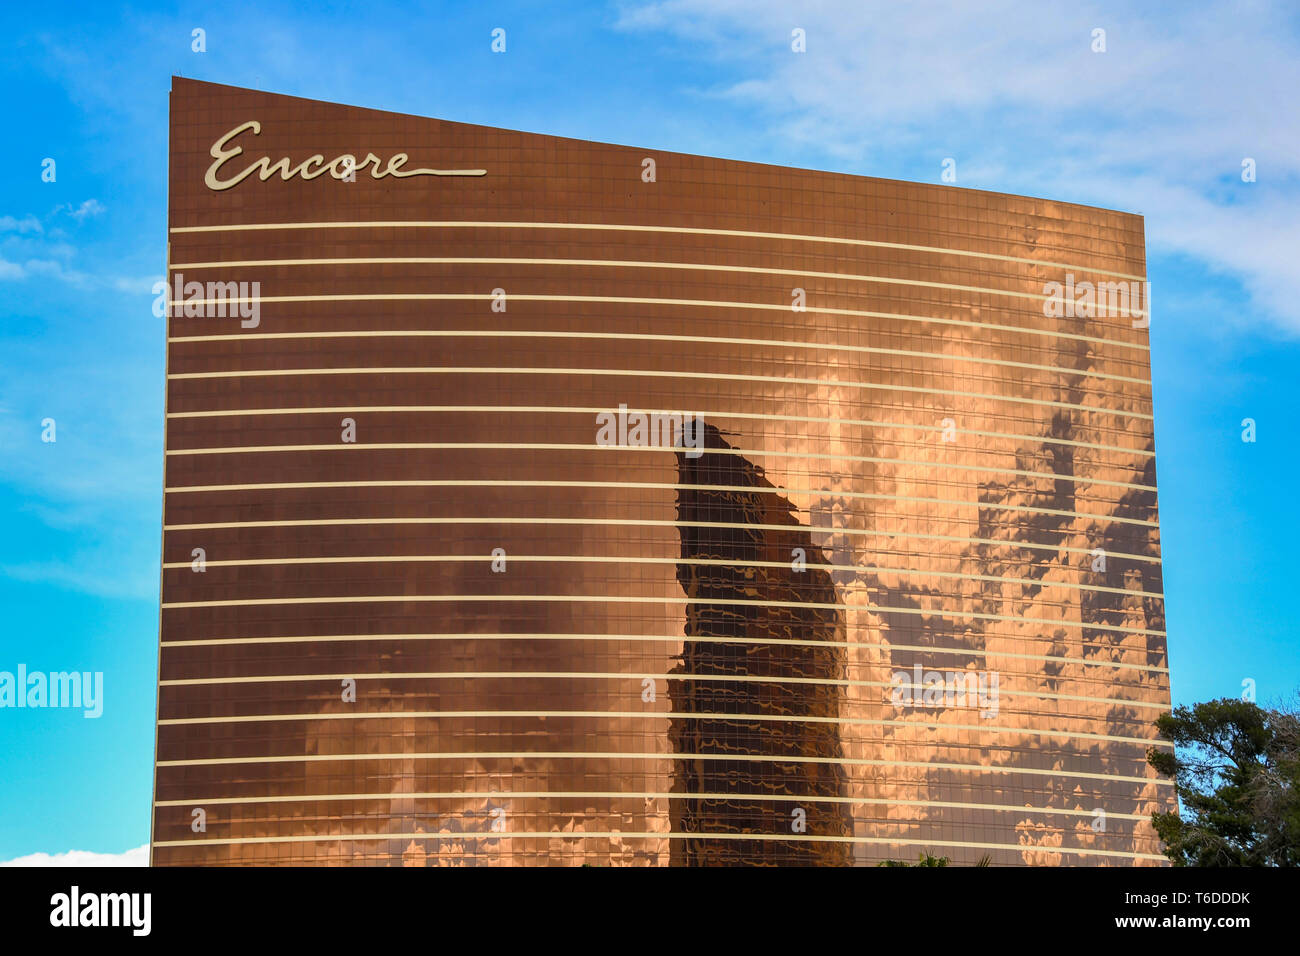 LAS VEGAS, NV, USA - Février 2019 : Extérieur de l'hôtel encore et Resorts sur Las Vegas Boulevard. Banque D'Images